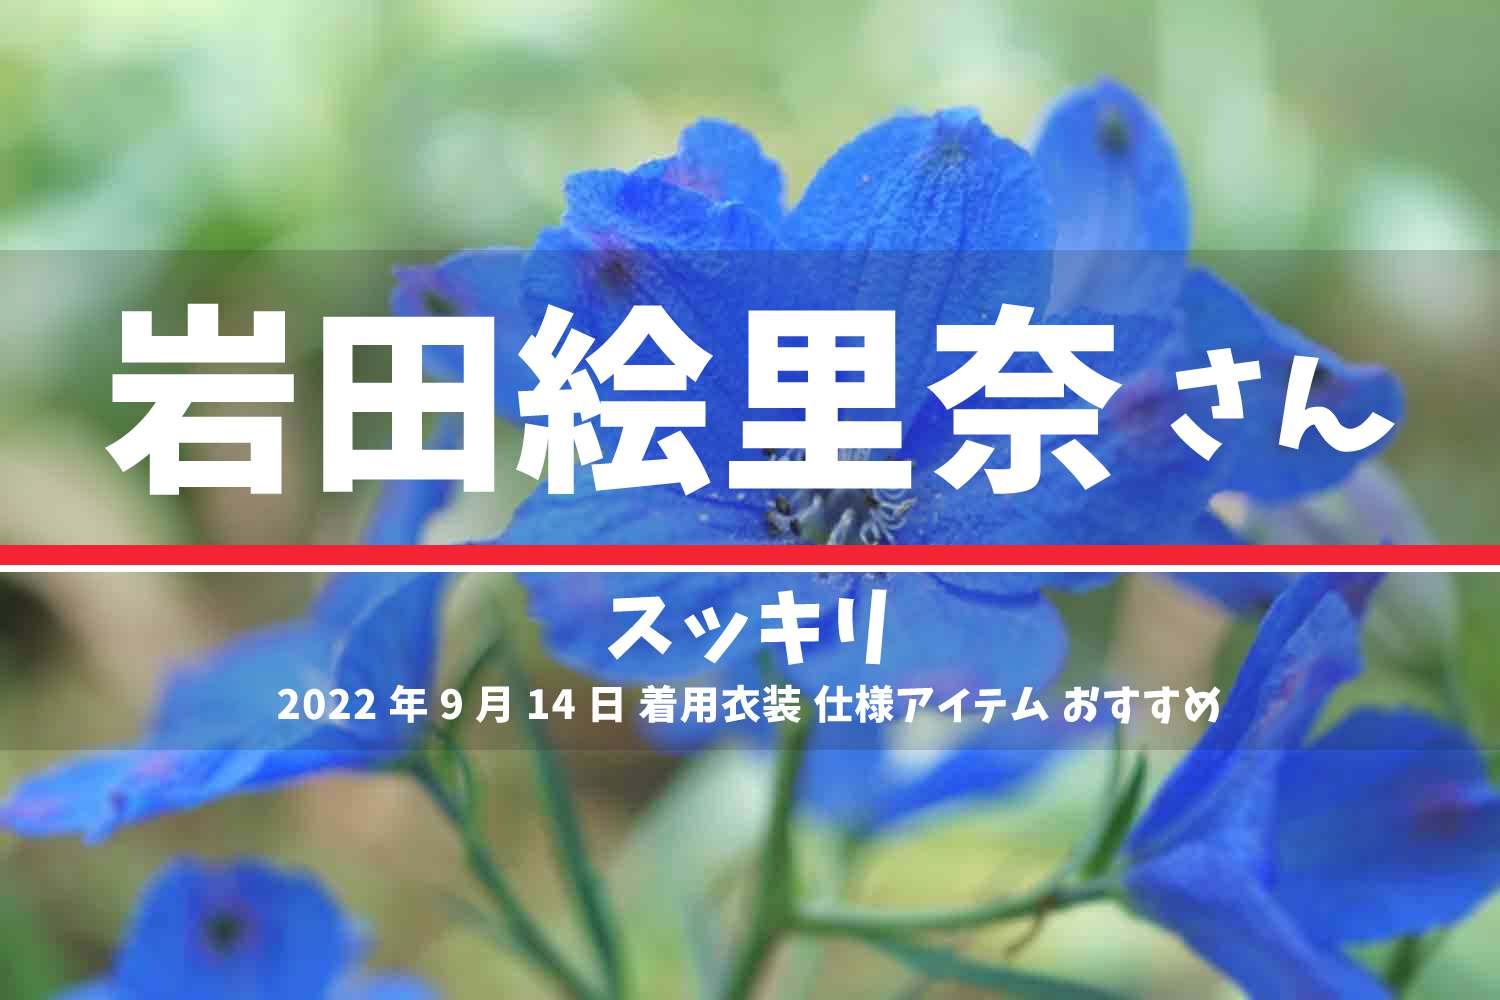 スッキリ 岩田絵里奈さん 番組 衣装 2022年9月14日放送